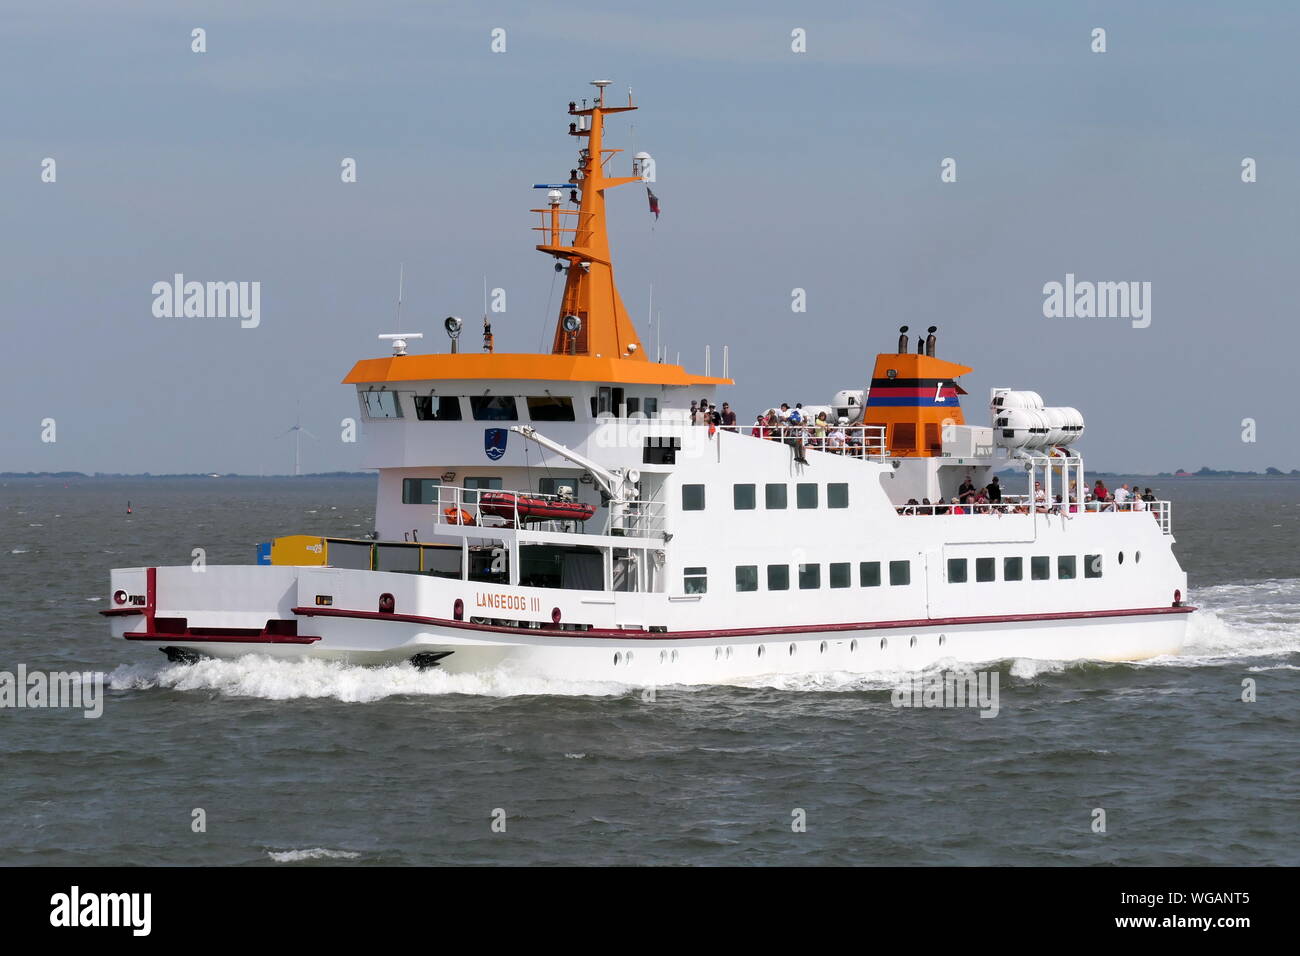 Il traghetto passeggeri Langeoog III il 24 giugno 2019 in modo da Bensersiel all isola di Langeoog. Foto Stock